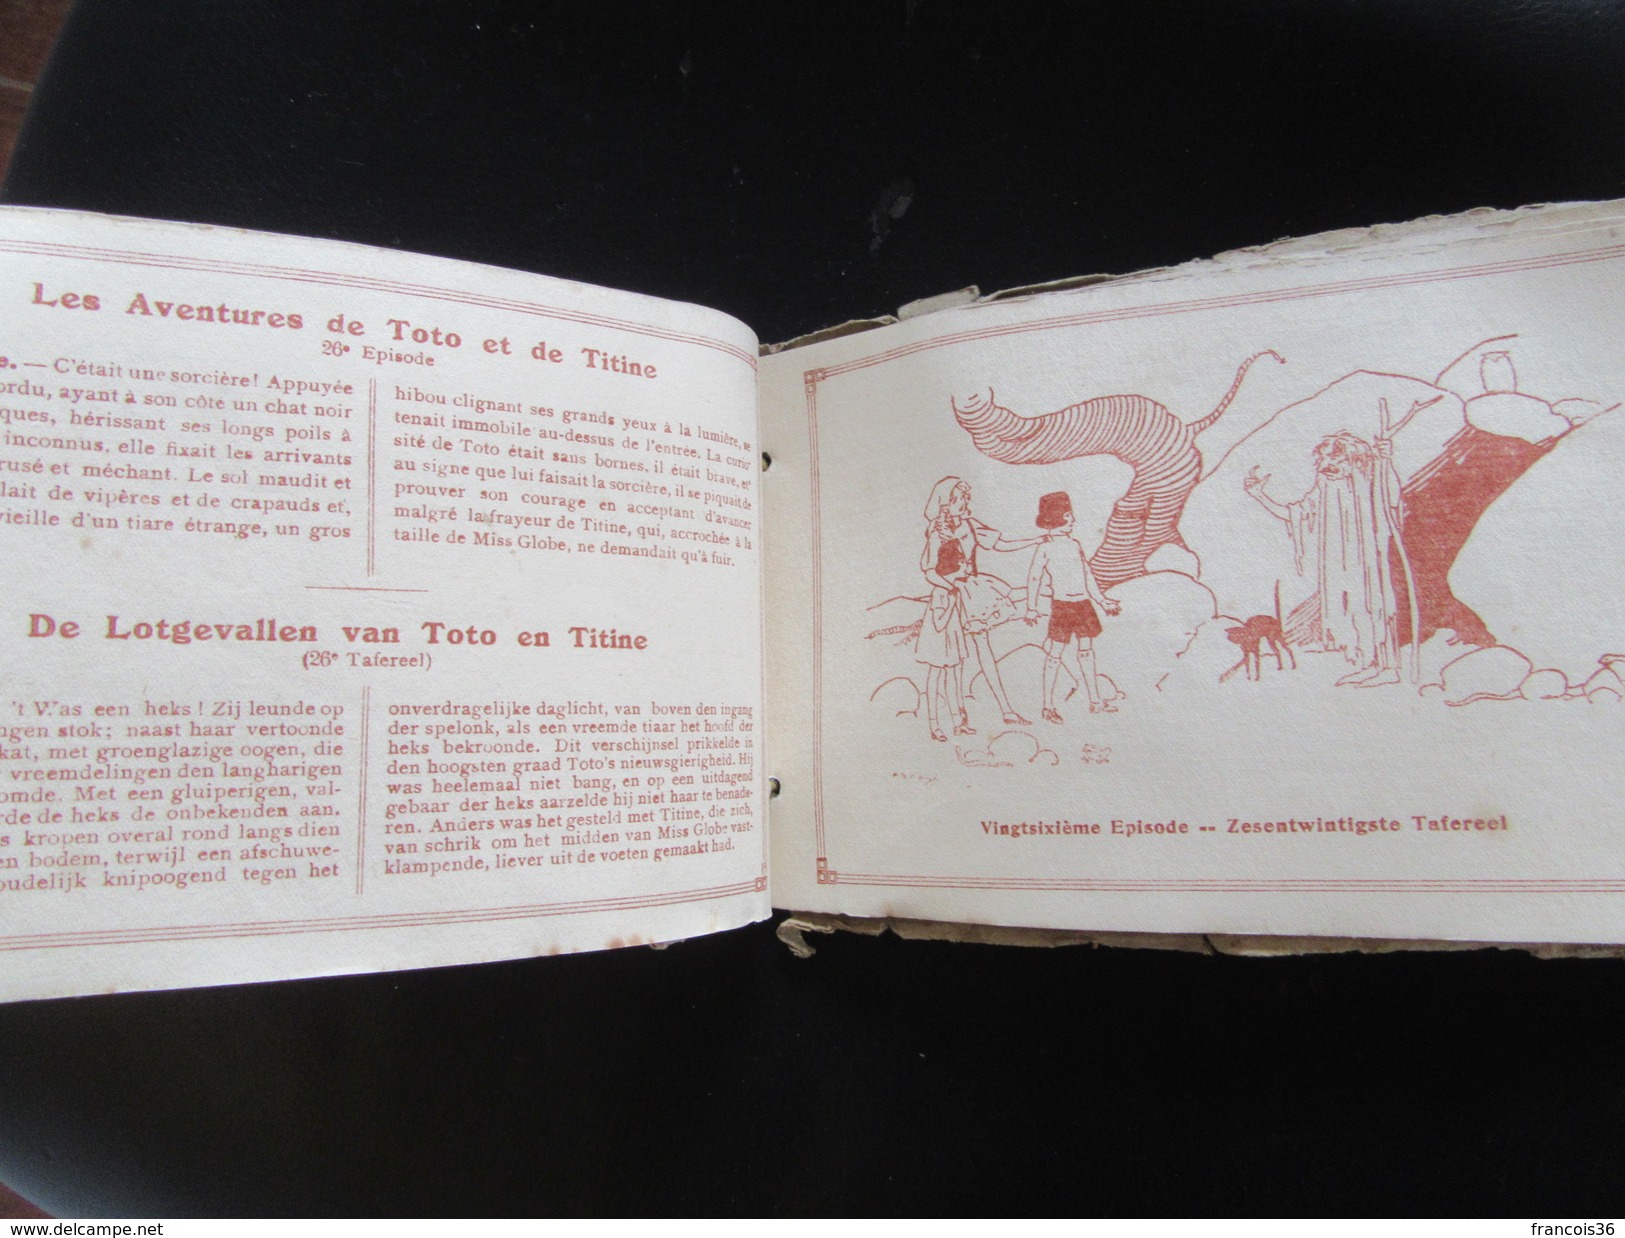 Livre avec illustrations - Les Aventures de Toto et Tintine - circa 1930 Ed. Anvers - F. S. May illustrateur